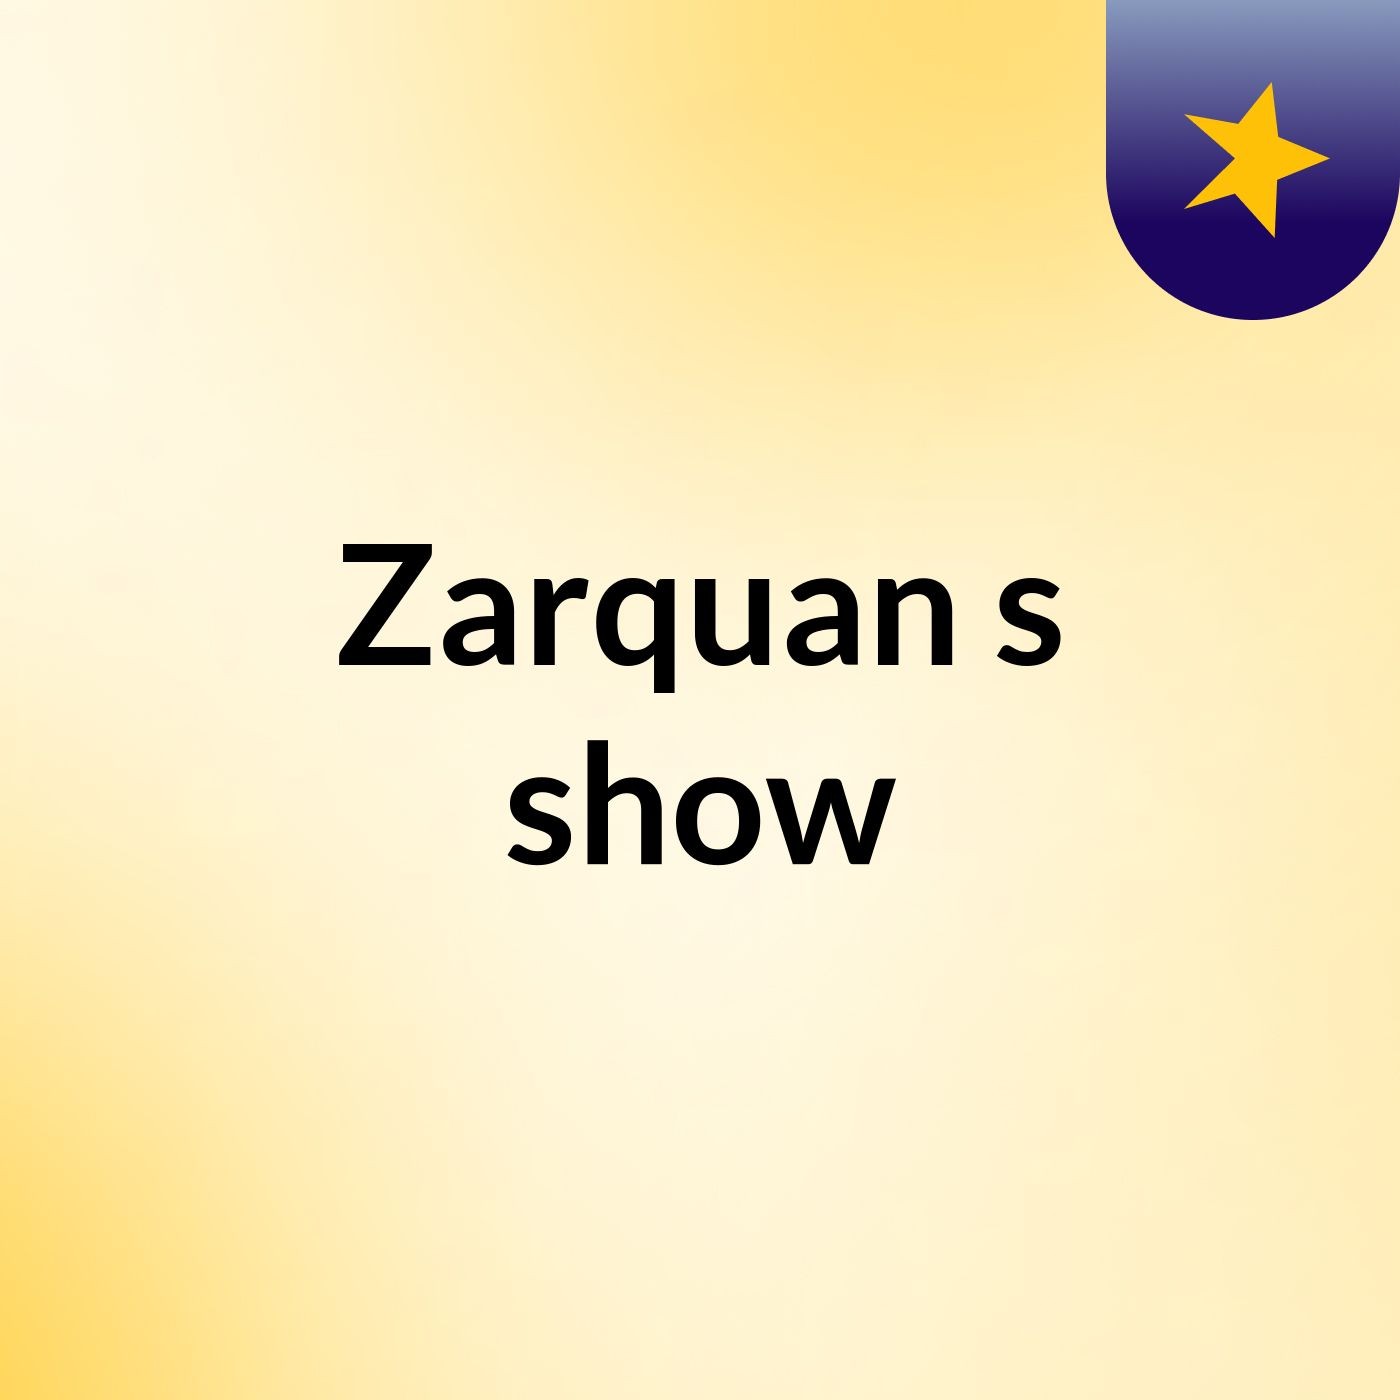 Zarquan's show